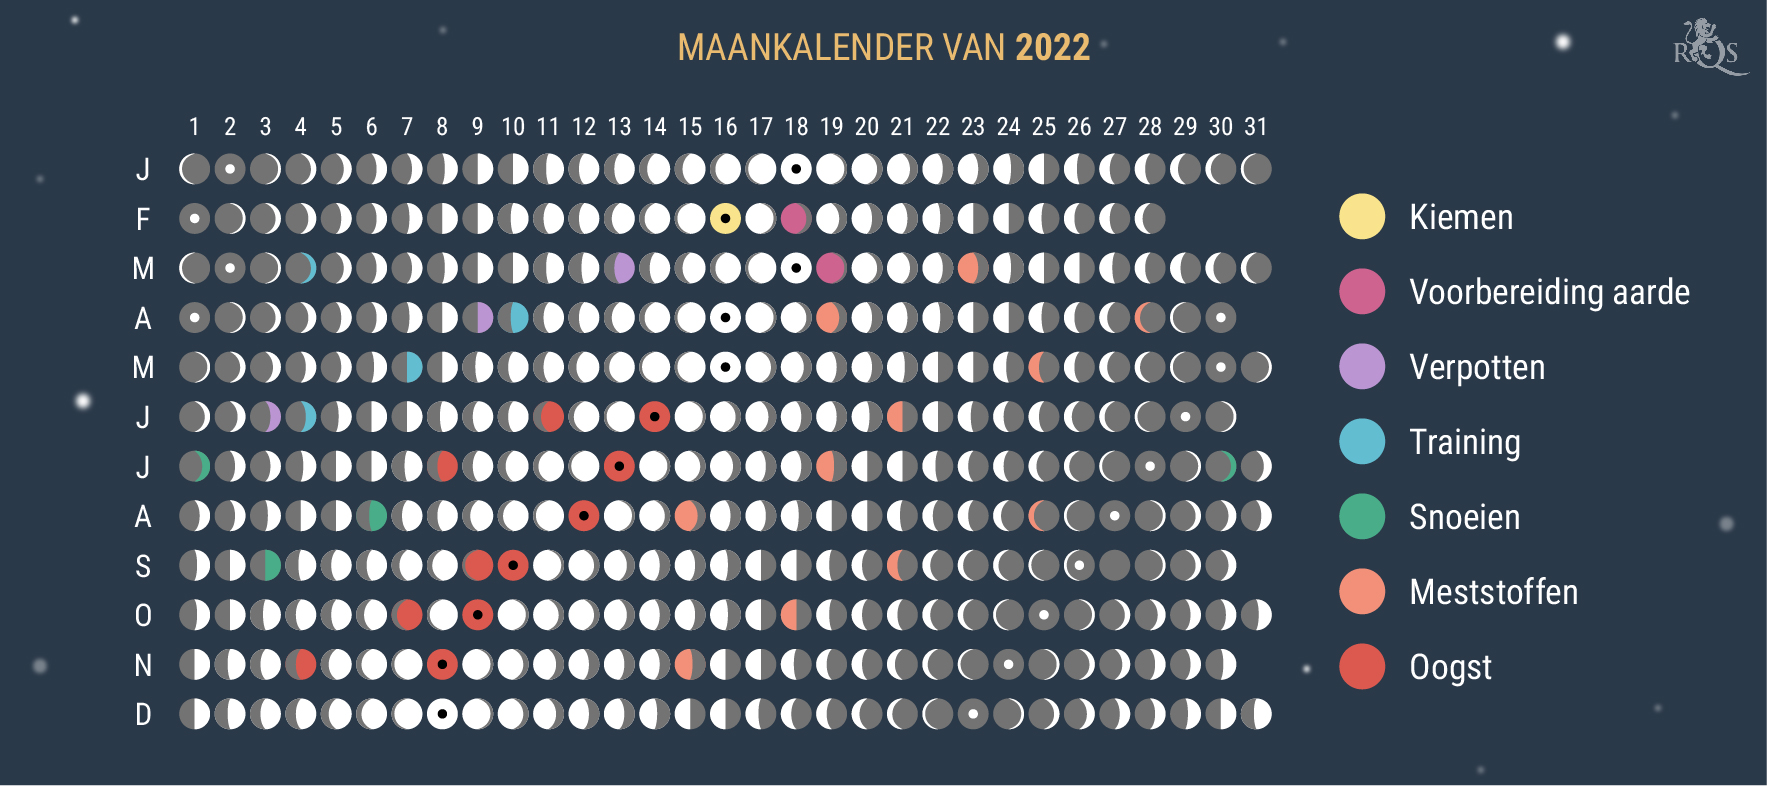 Hoe gebruik je de maankalender van 2022 bij het kweken van wiet?